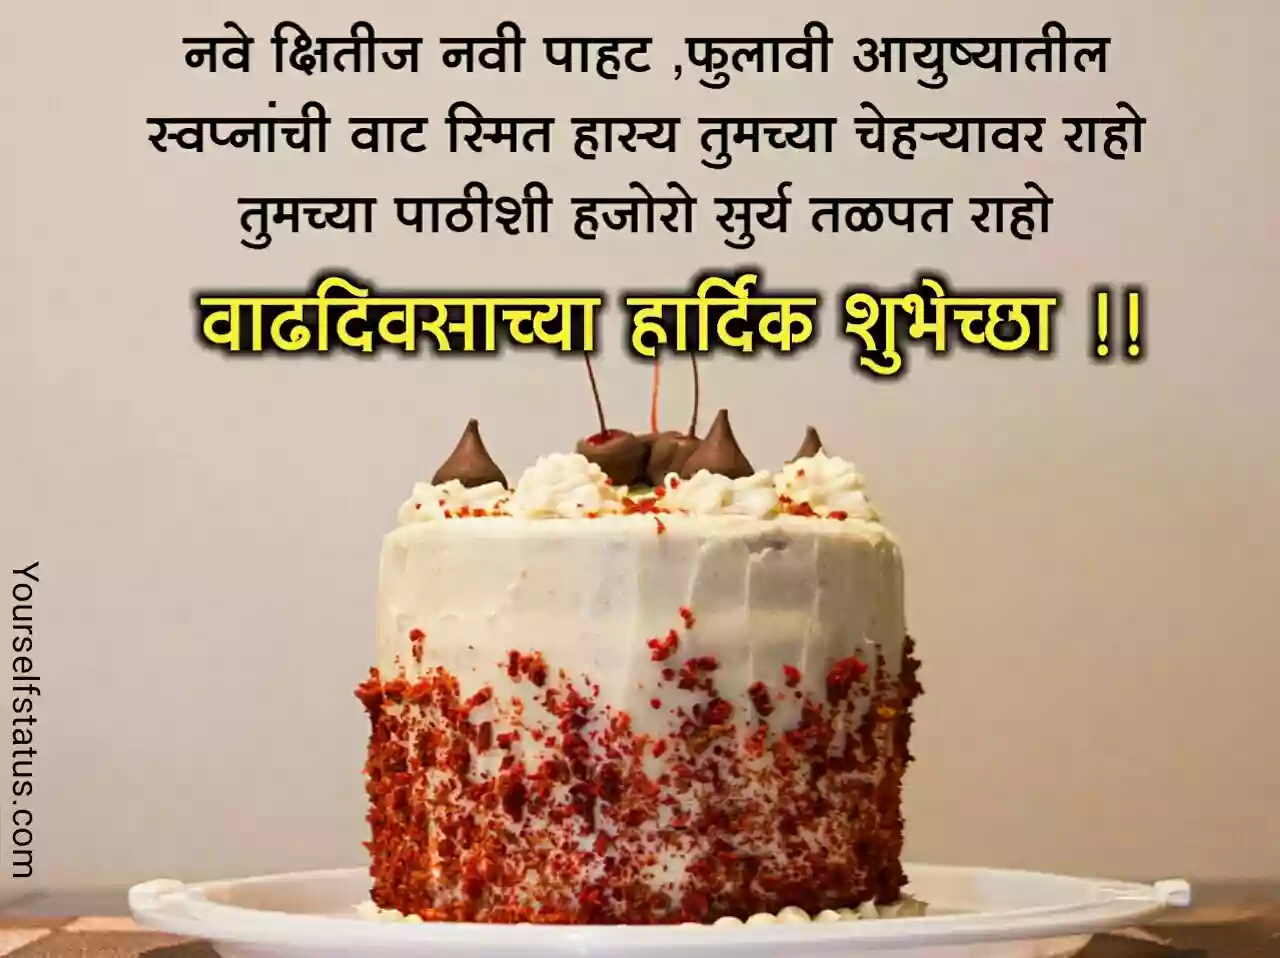 Birthday quotes in marathi